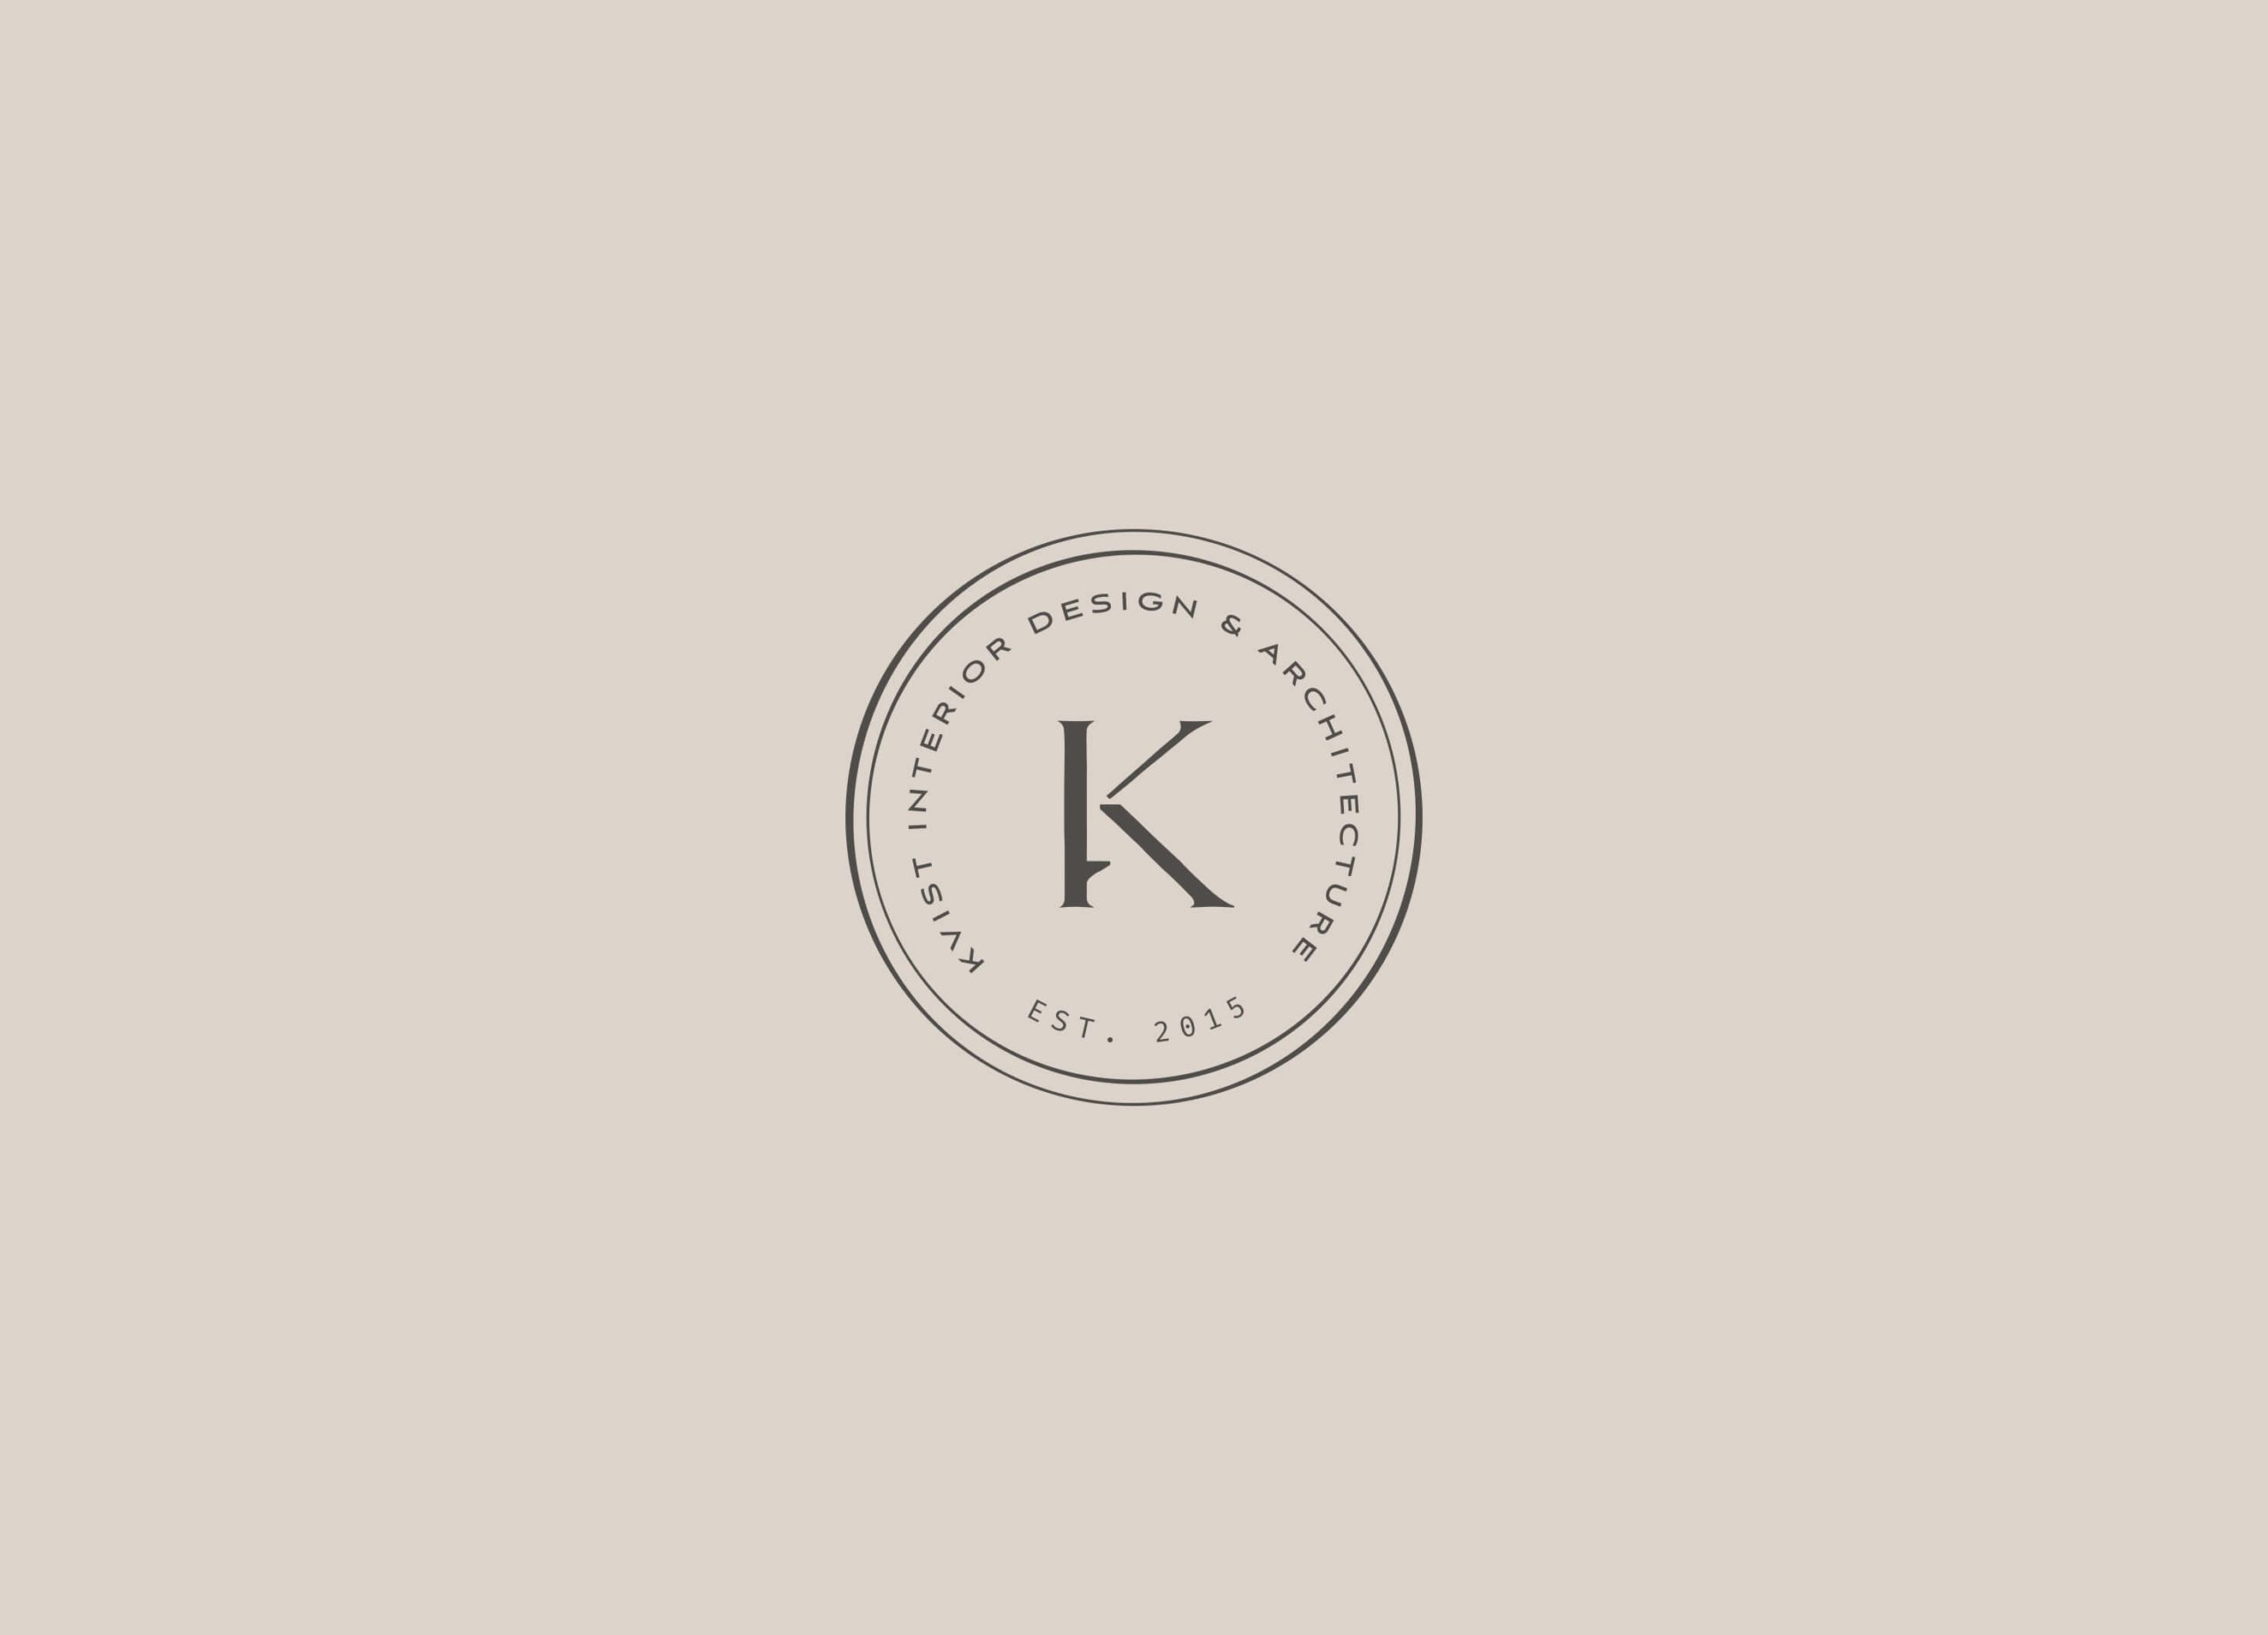 Sub logo design for KVIST brand